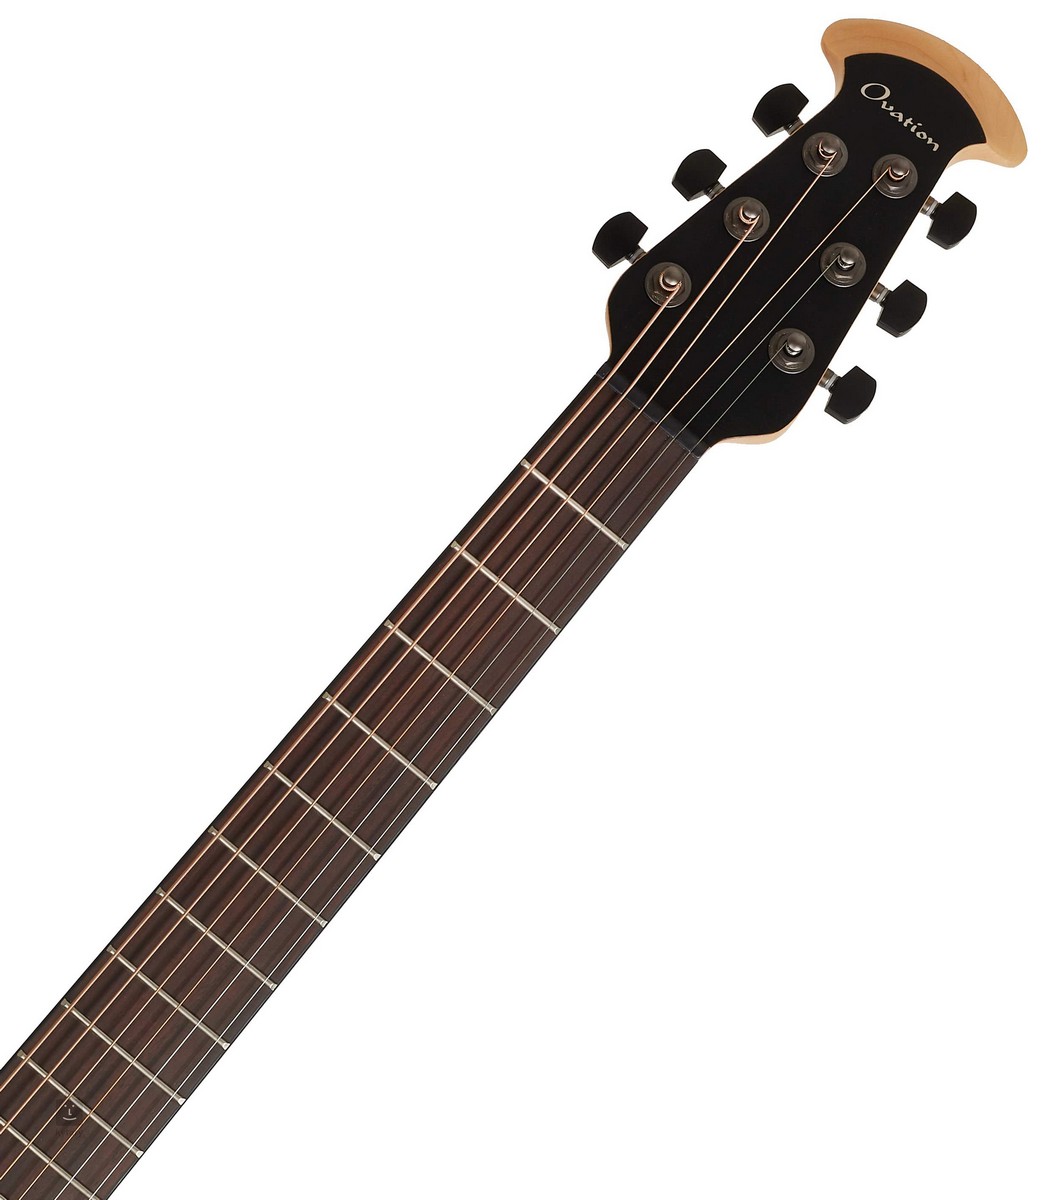 Электроакустическая гитара OVATION 2078TX-5 Elite TX Deep Contour Black Textured